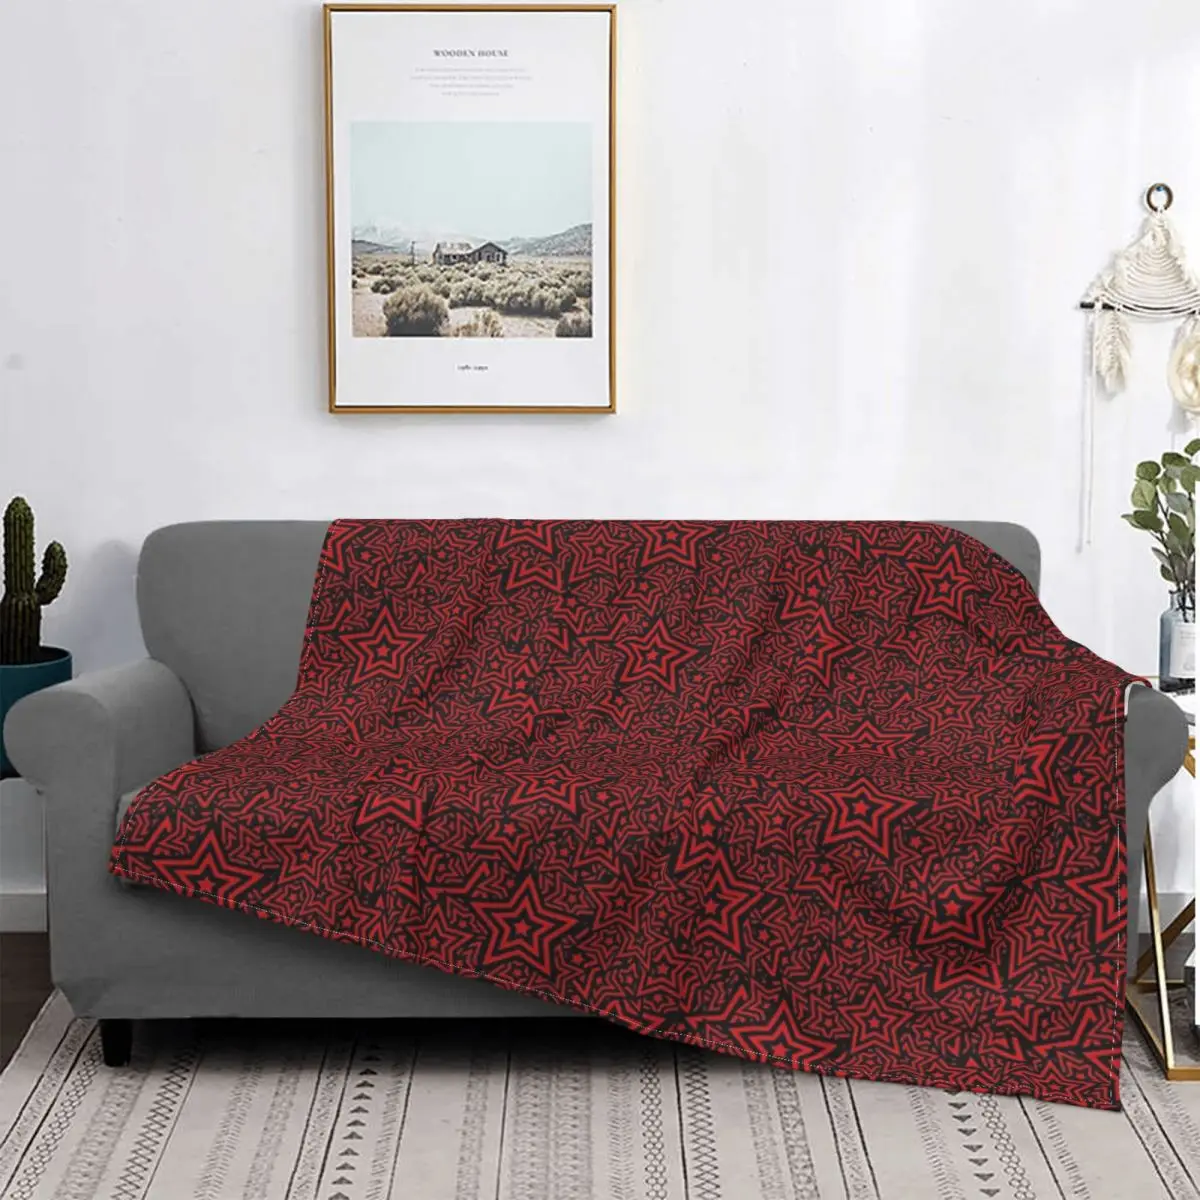 

Manta con patrón de estrella Persona 5, colcha a cuadros para cama, sofá y cama, toalla de playa de lujo, color rojo y negro